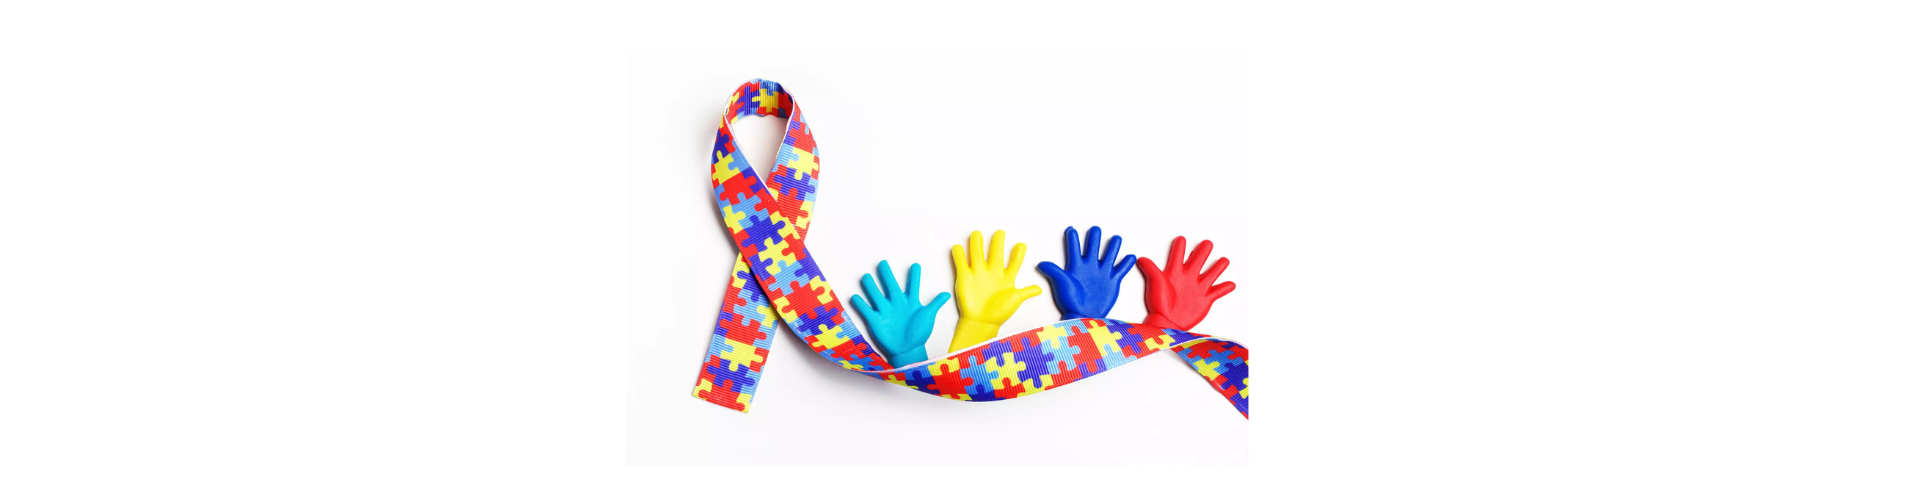 Dia internacional de Conscientização ao Autismo